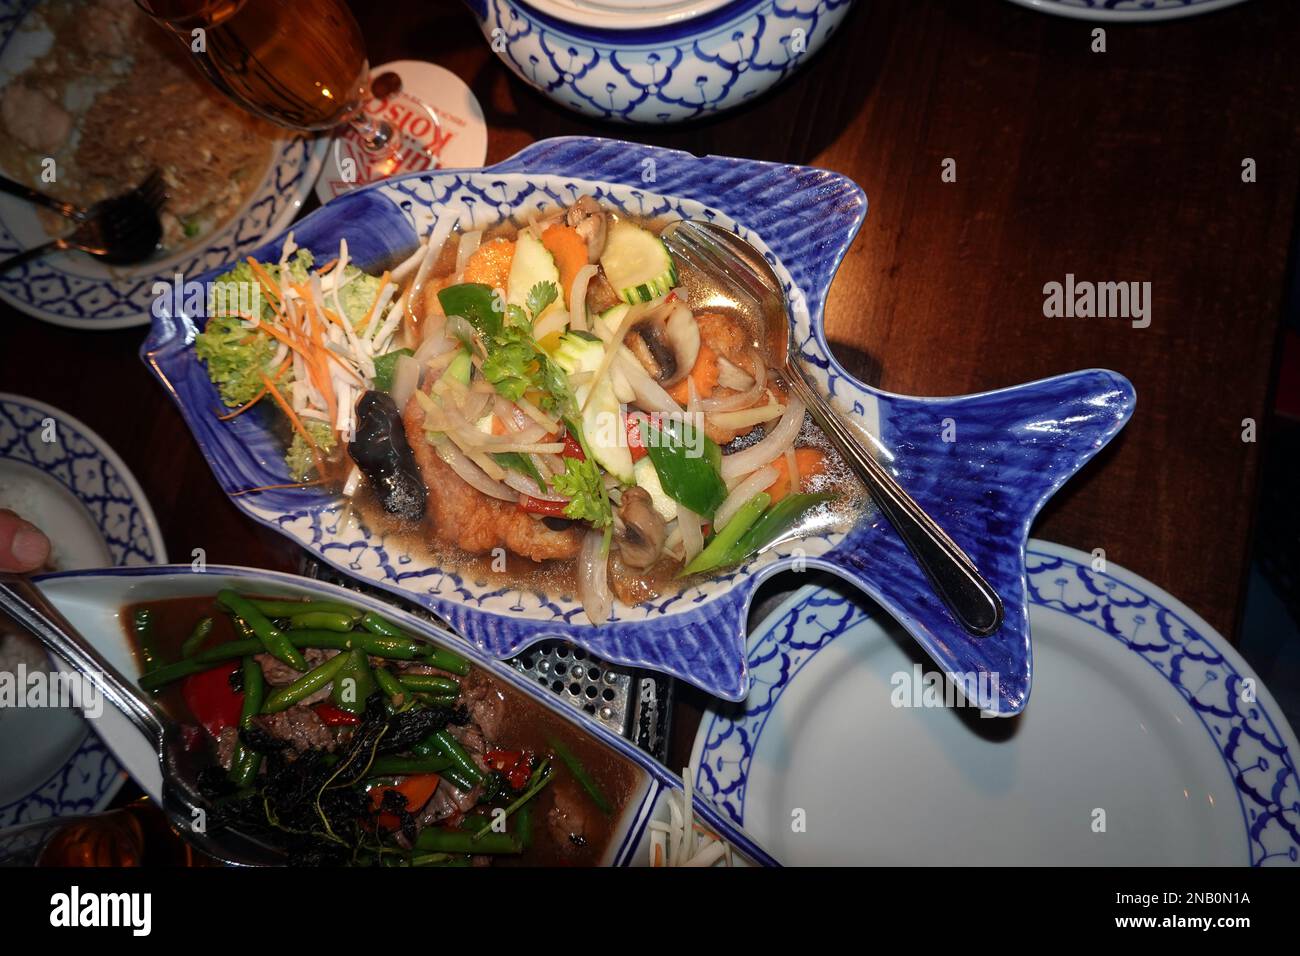 Rotbarsch-Filet auf thailändische Art, serviert in fischförmigen Teller ...